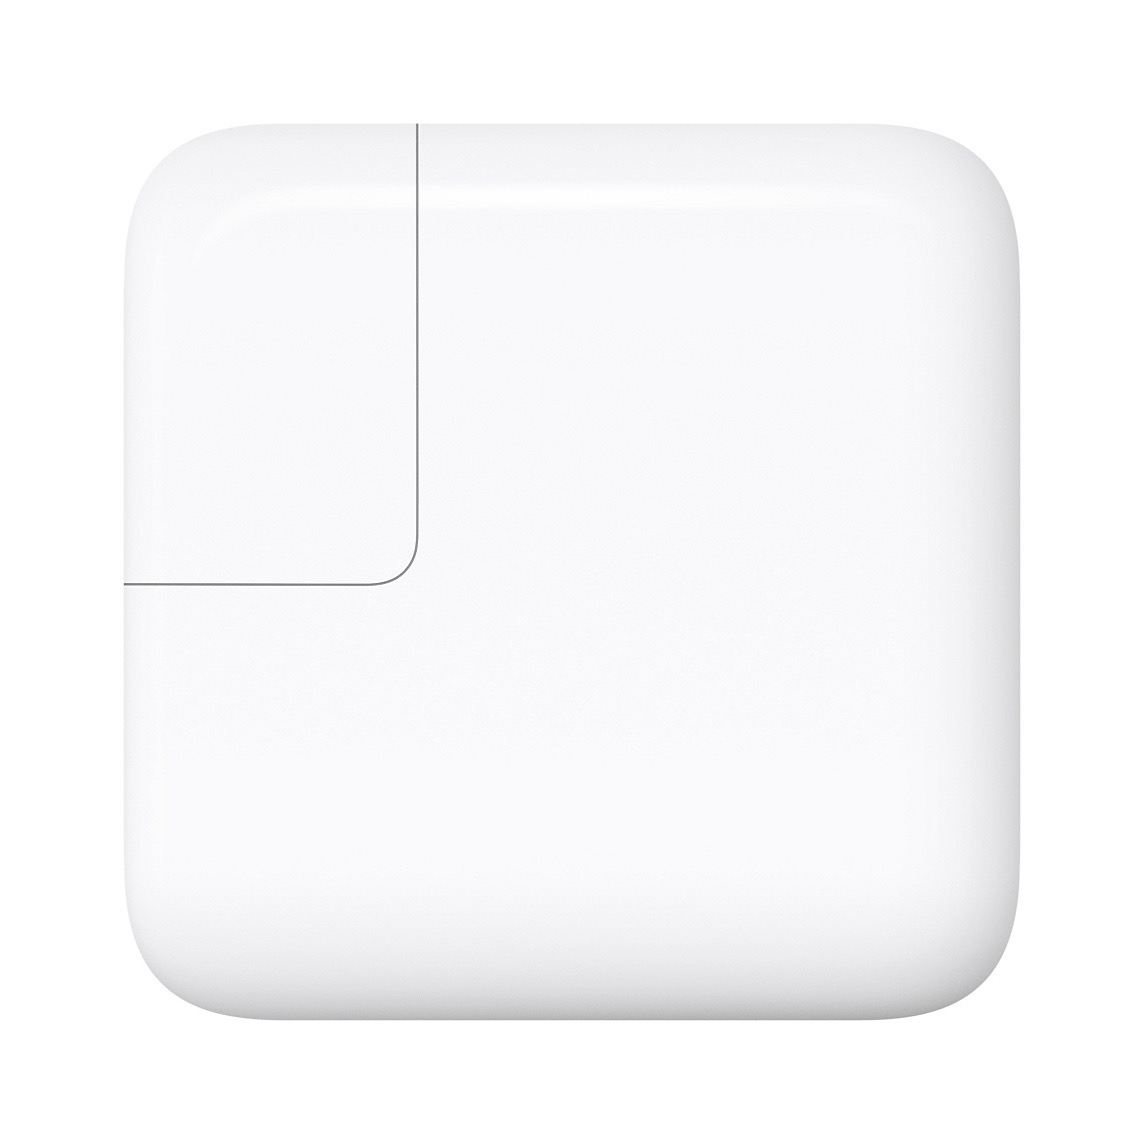 Apple、｢30W USB-C電源アダプタ｣を販売開始 − 29Wモデルは販売終了